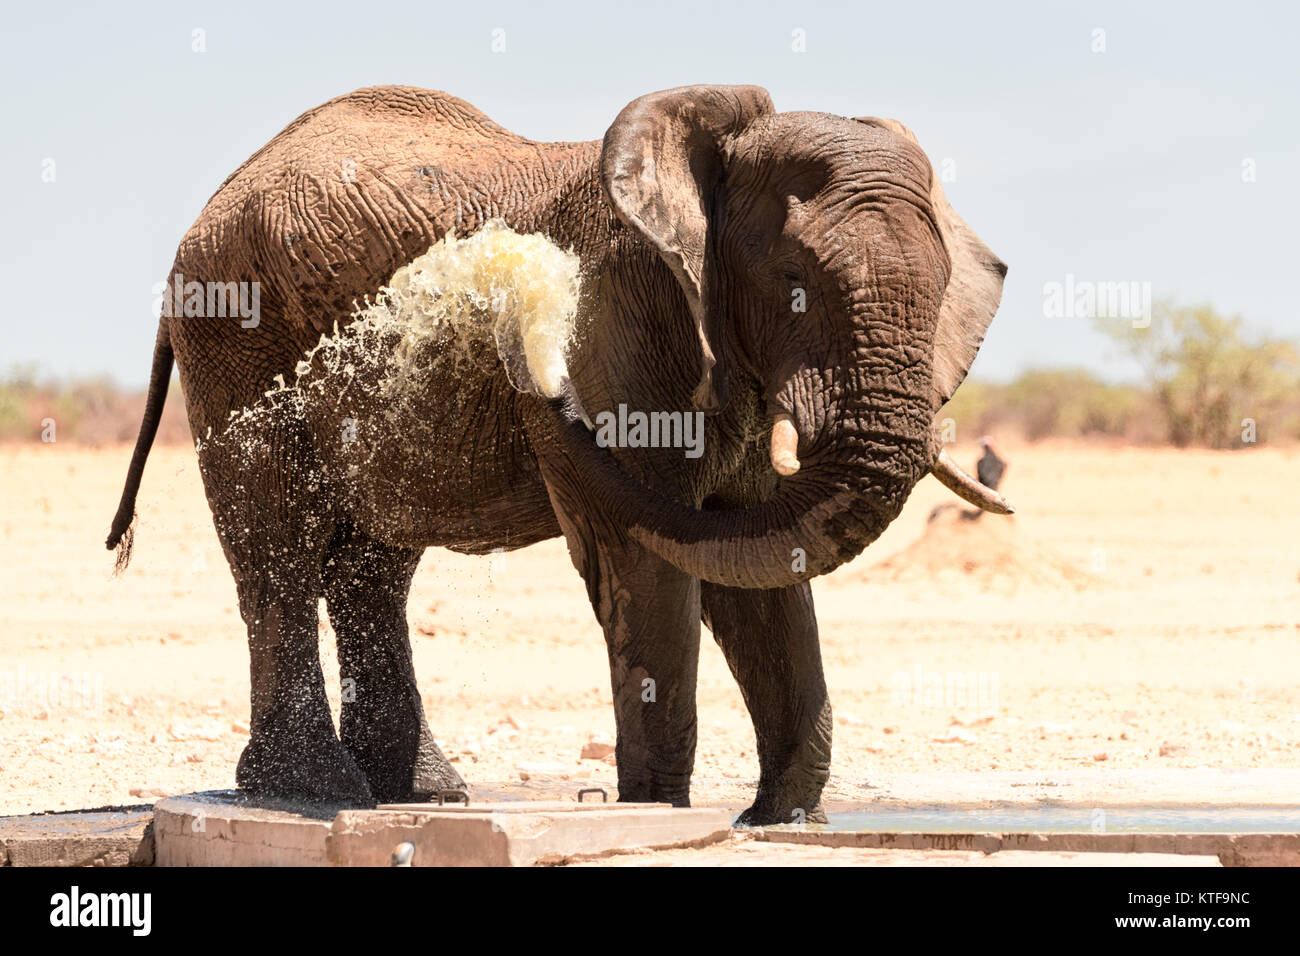 Gran elefante toro riegan agua sobre sí mismo para enfriar en un abrevadero, de Etosha, en Namibia. Foto de stock